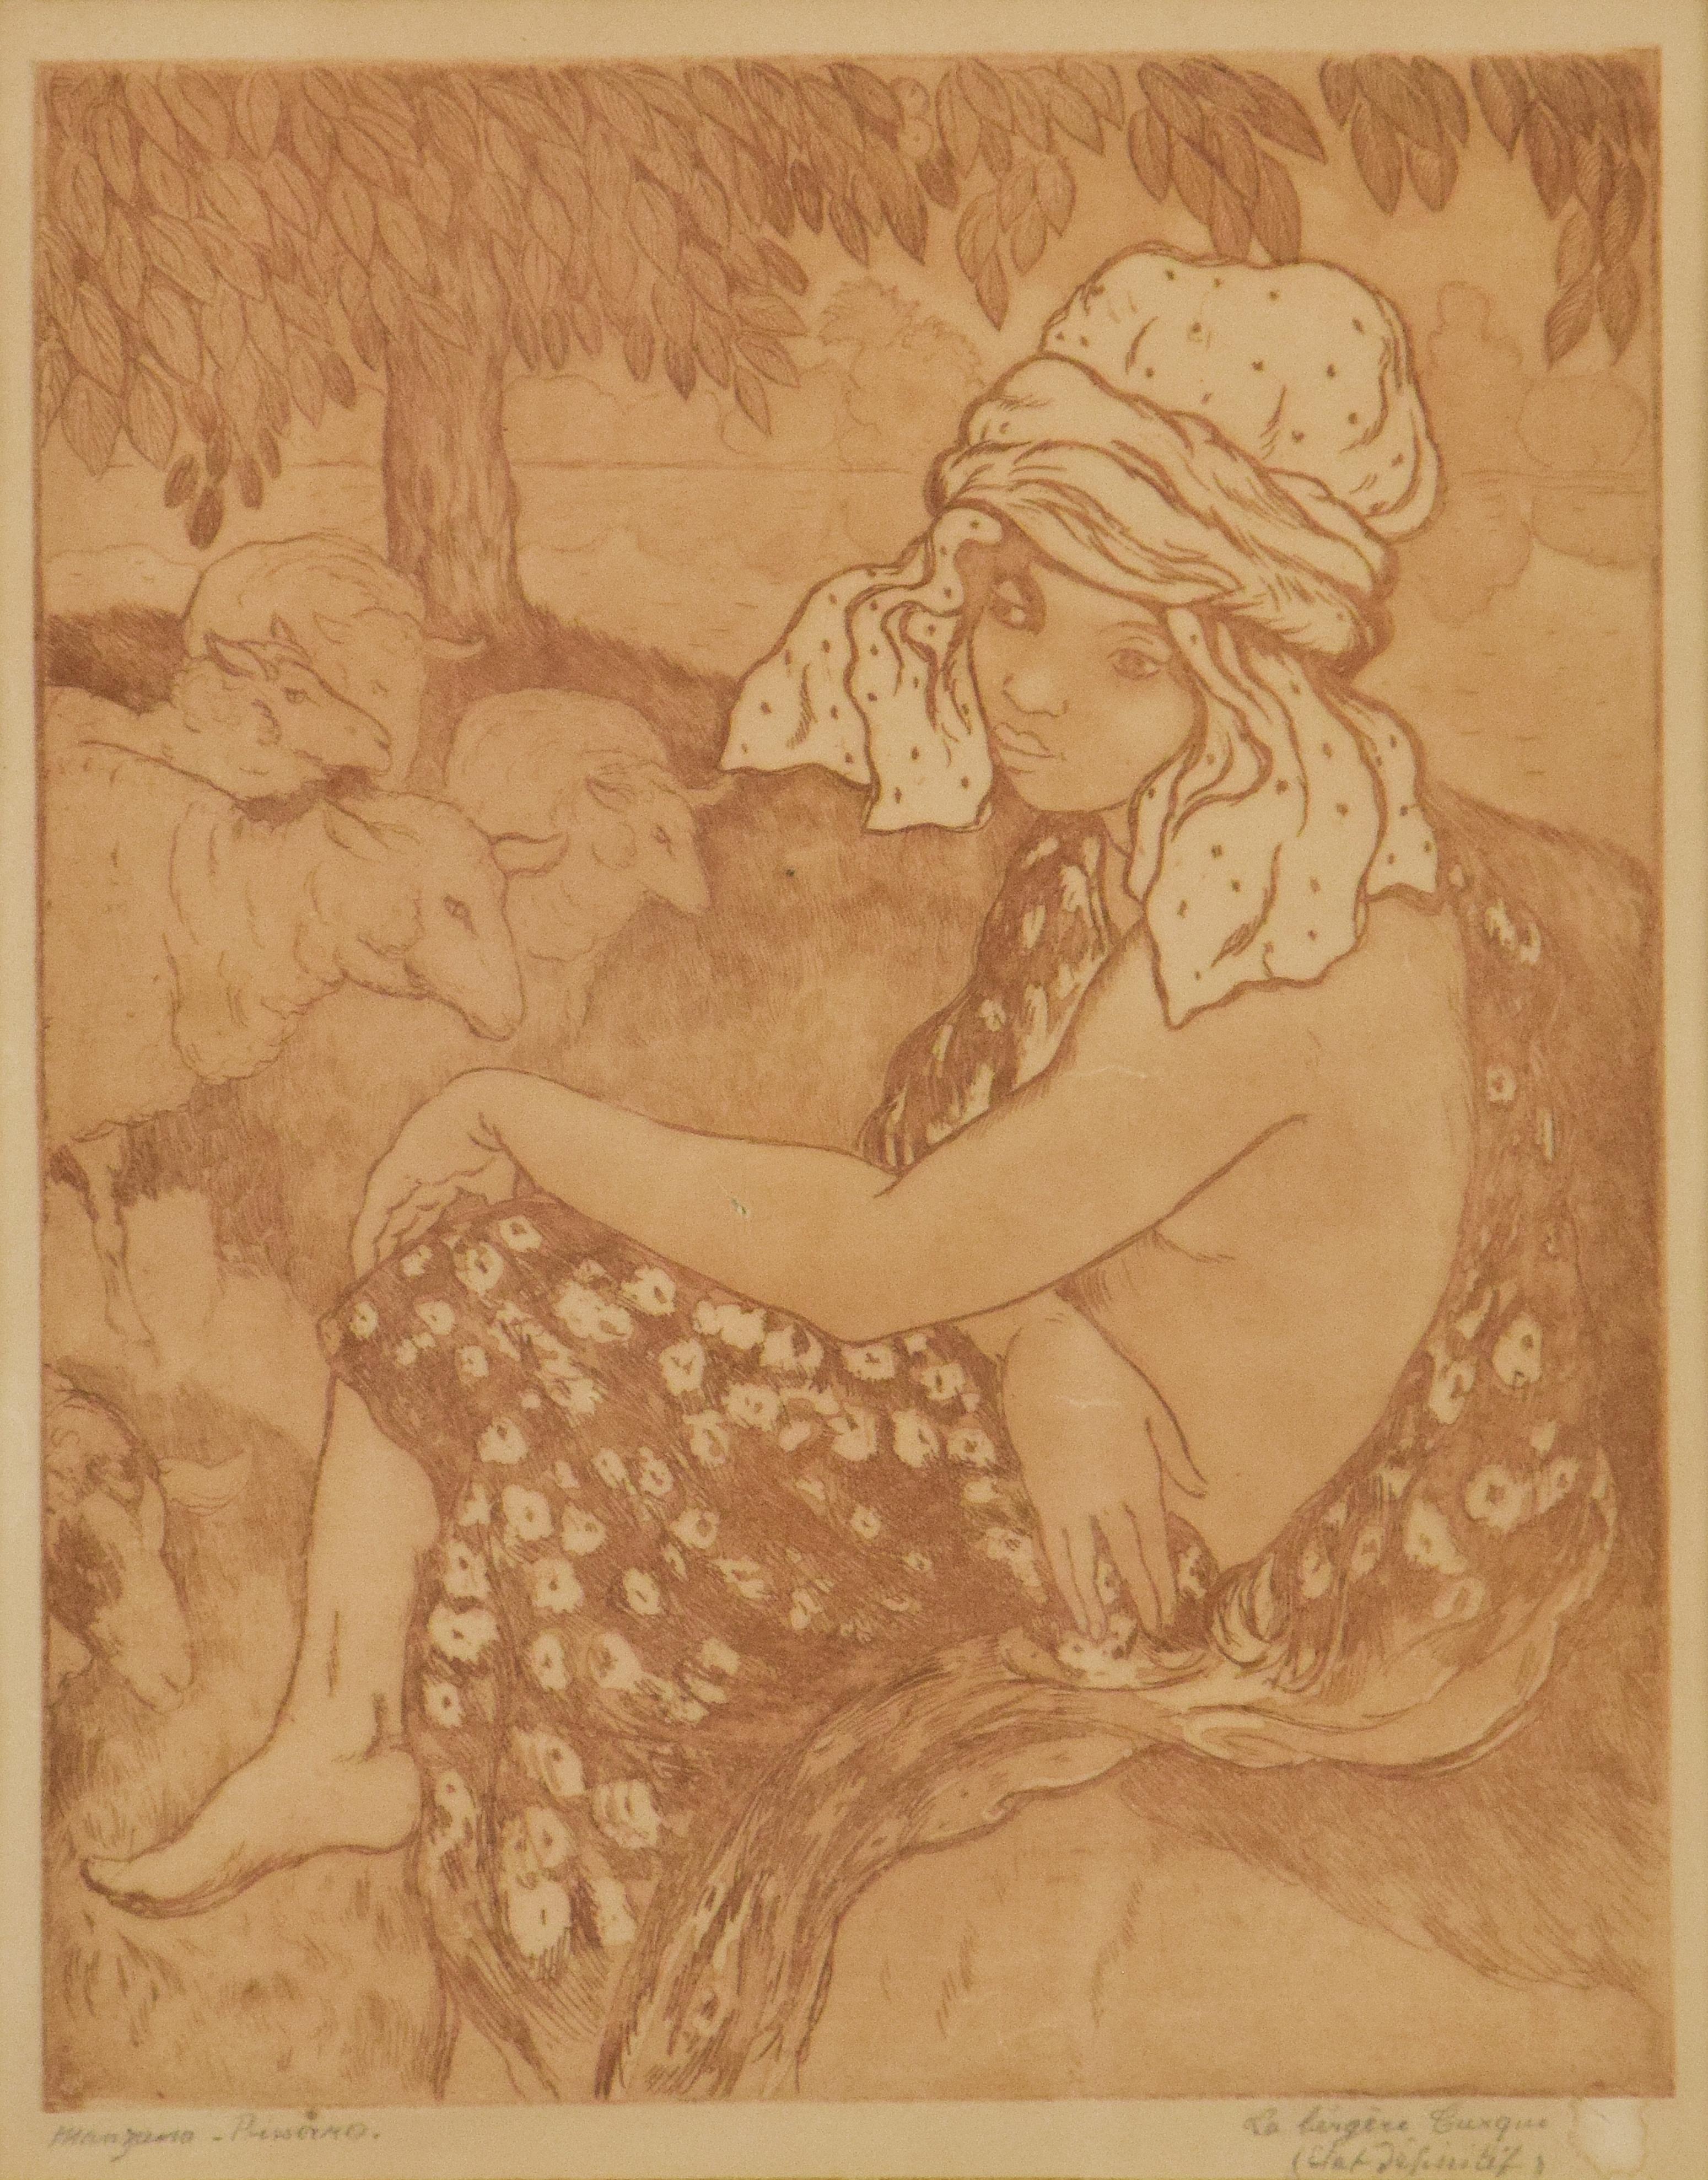 Druck von Georges Manzana Pissarro „La Bergre Turque“ (Die türkische Hirtenschwesterin)